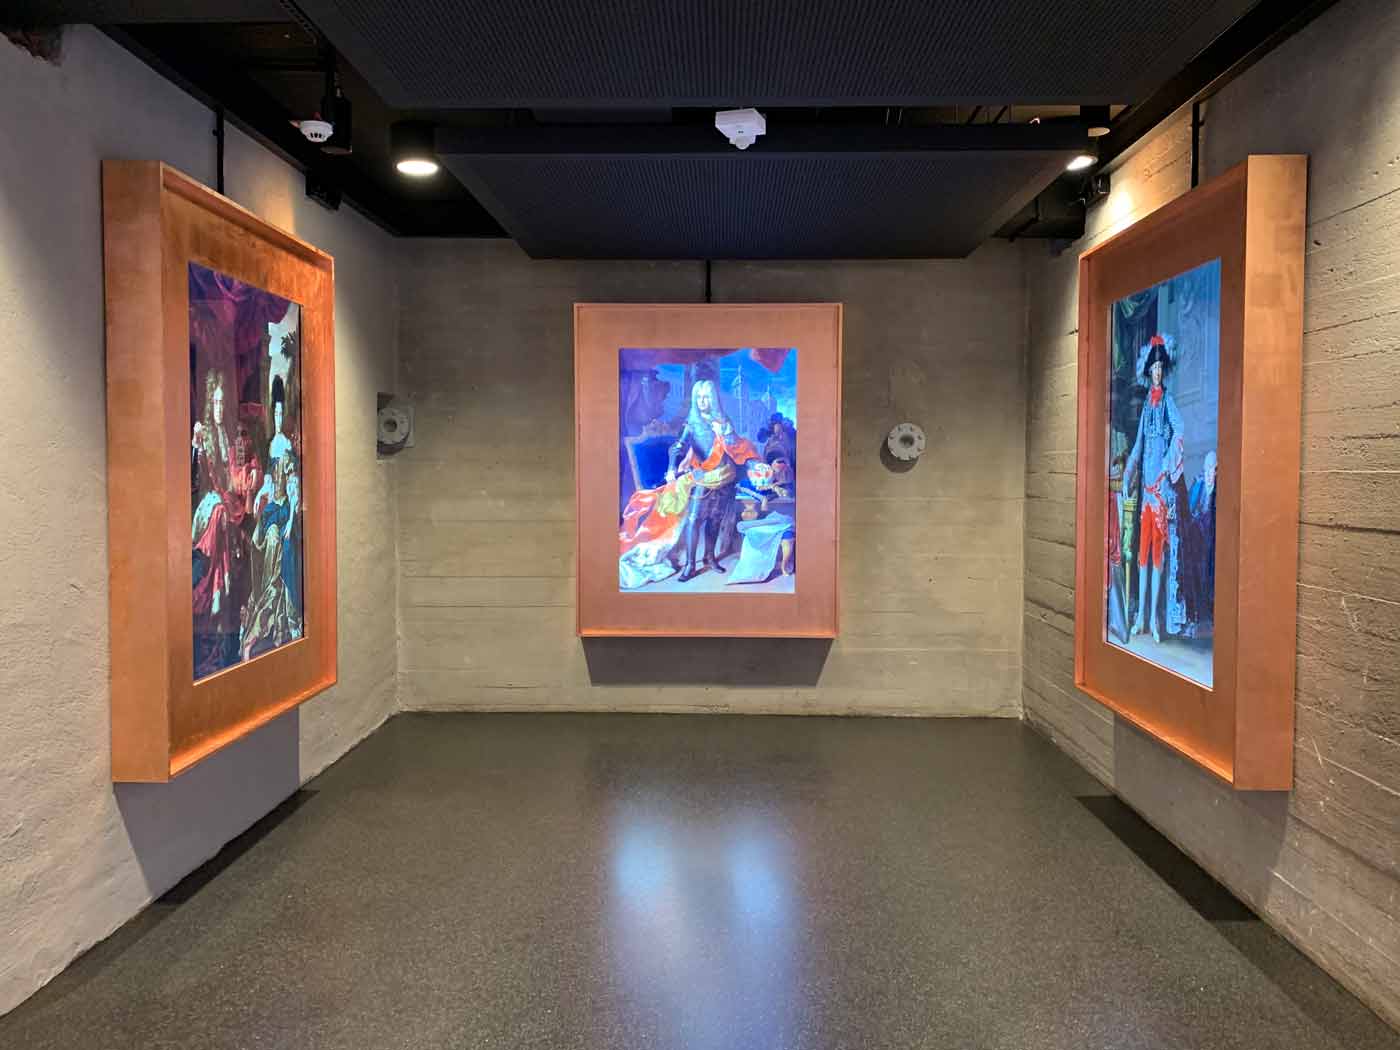 Ausstellungsraum mit drei wuchtigen digitalen Bilderrahmen mit Bildern von Kurfürsten